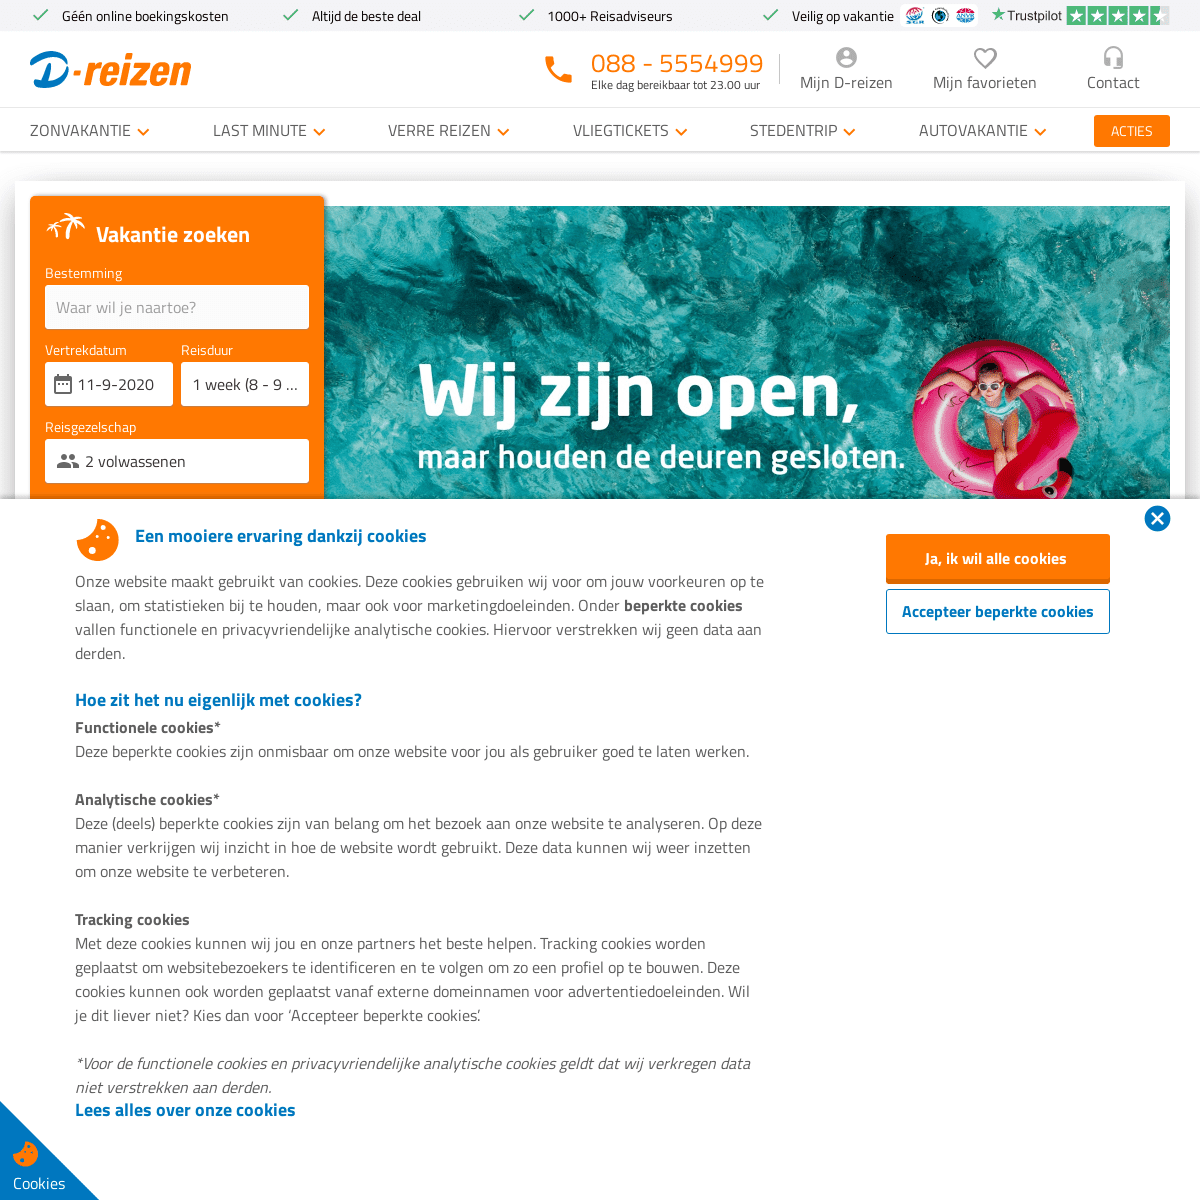 A complete backup of d-reizen.nl